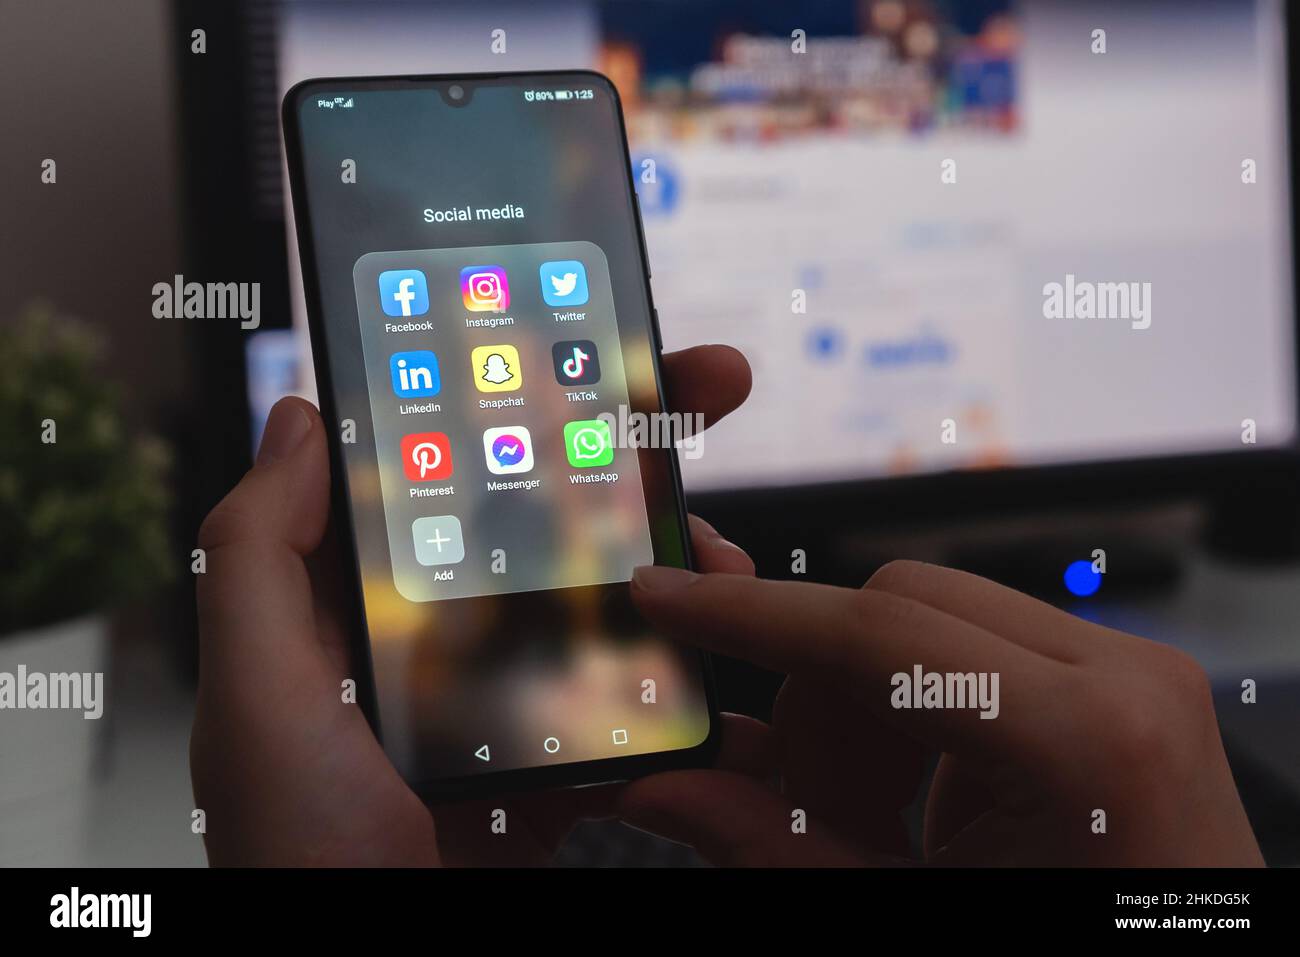 Wroclaw, Polonia - 27 GENNAIO 2022: App di social media installate sul dispositivo Huawei. Uomo che naviga nelle applicazioni dei social media. Foto Stock